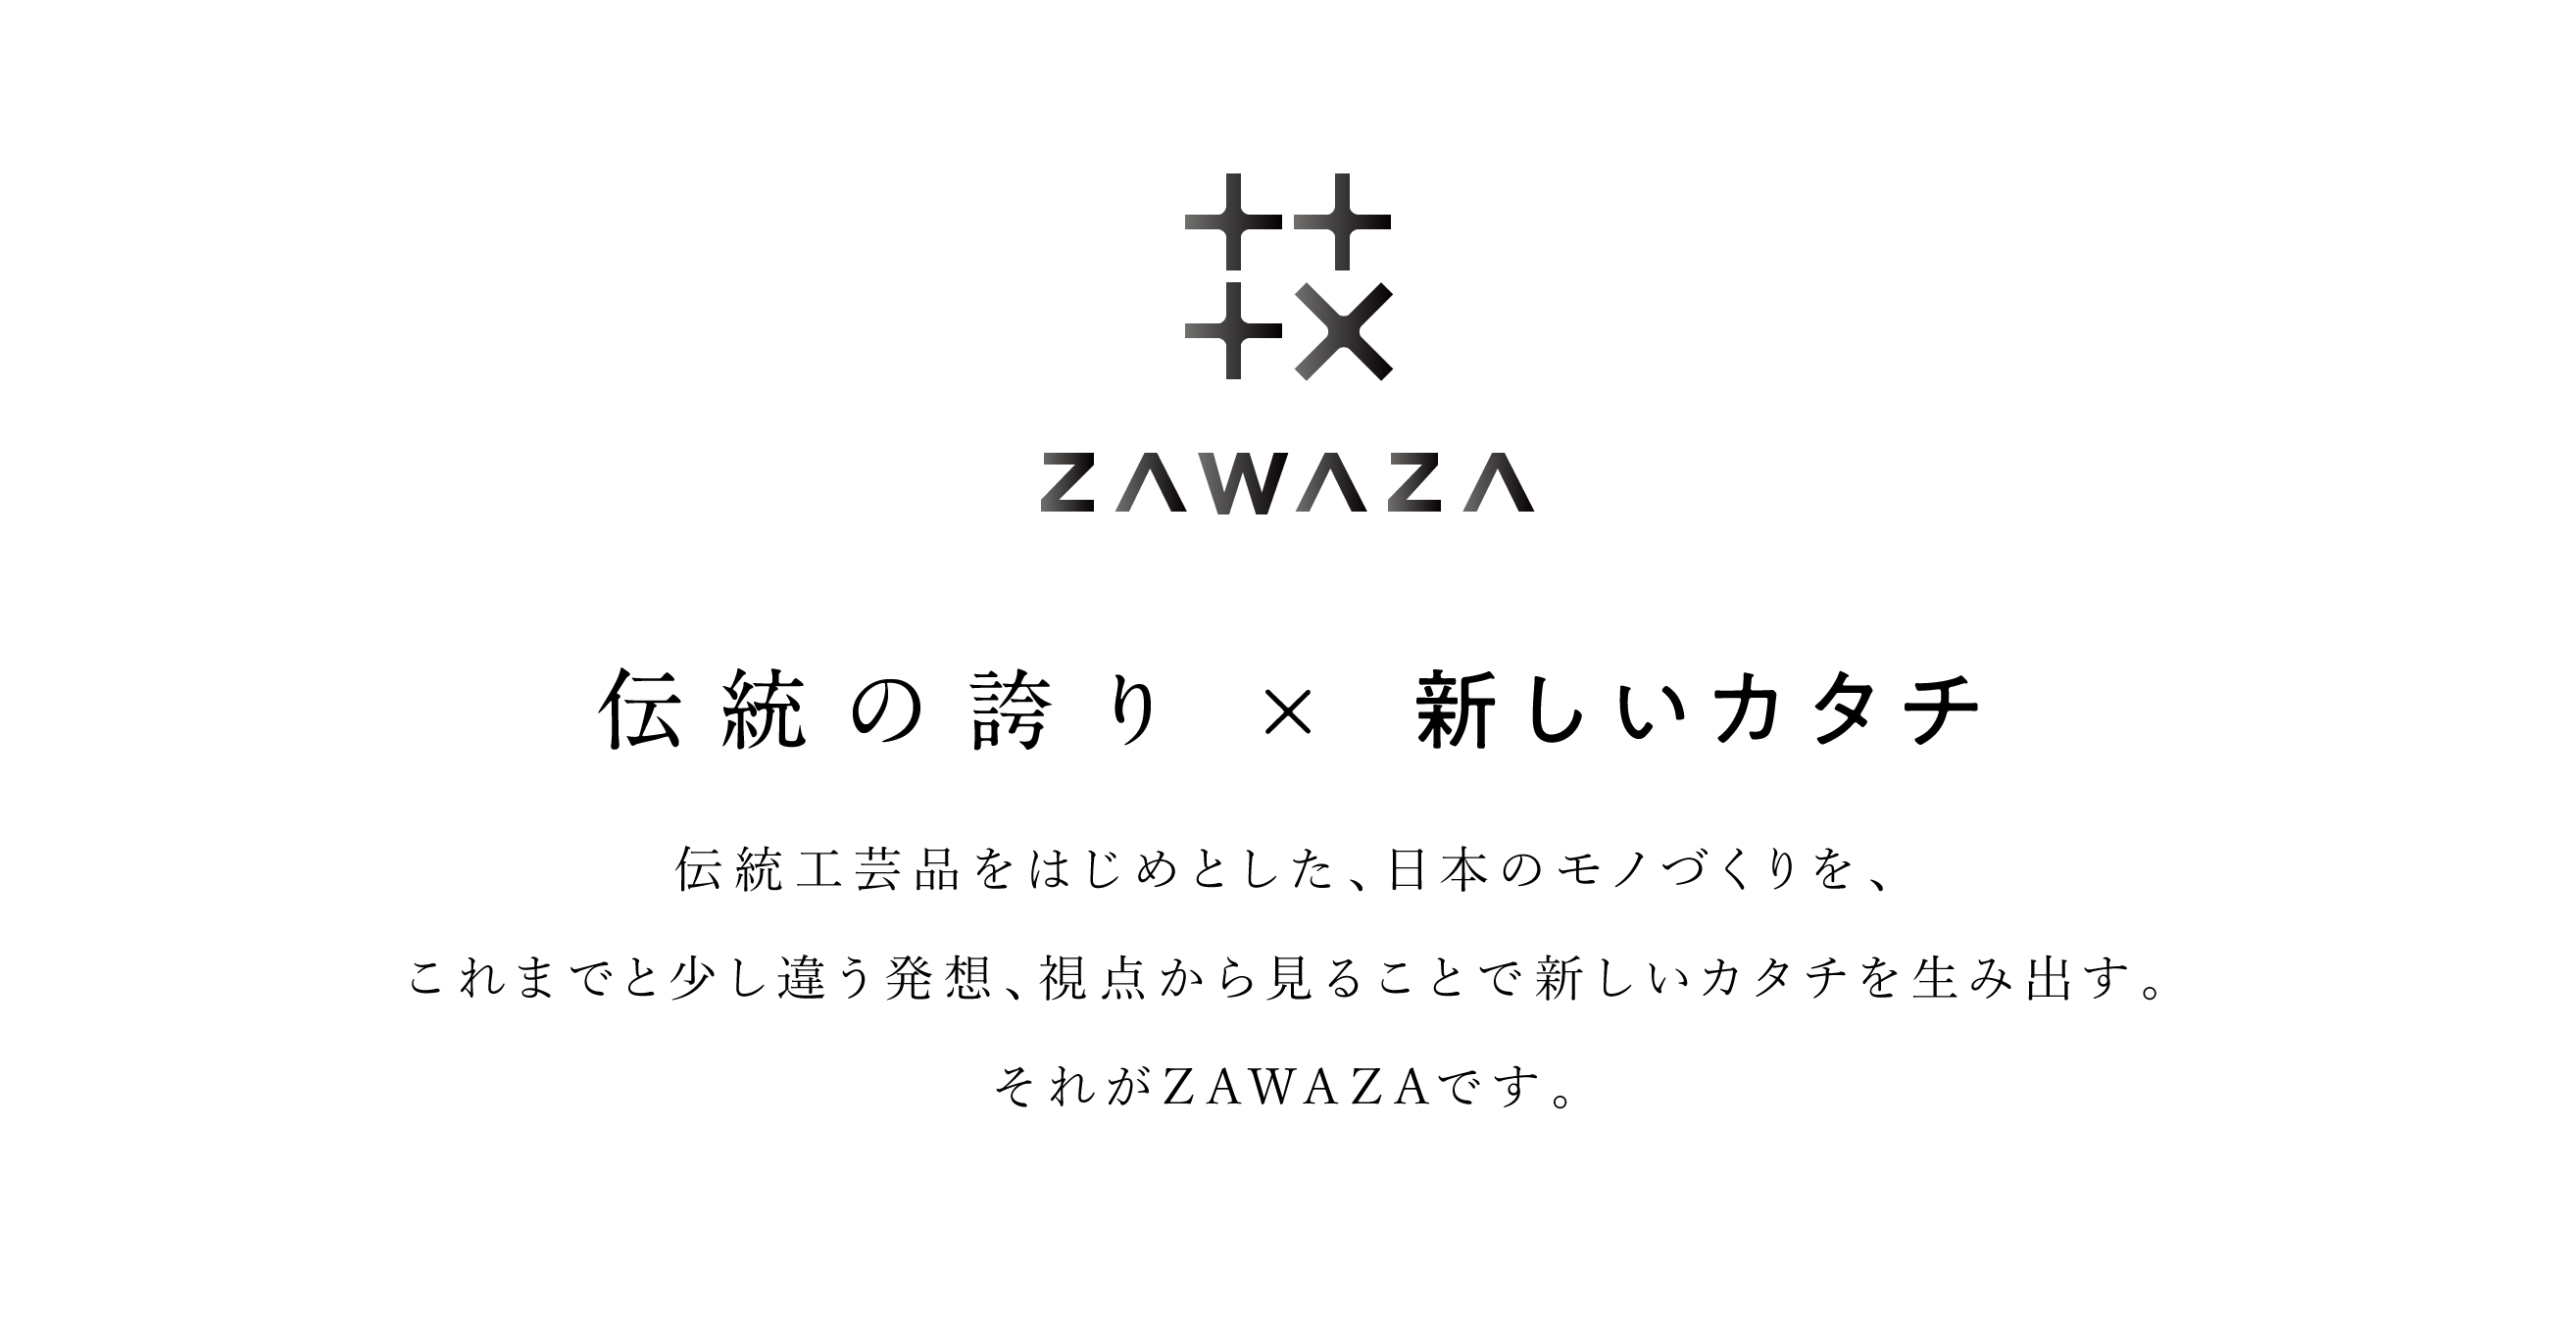 ZAWAZA「伝統の誇り×新しいカタチ」伝統工芸品をはじめとした、日本のモノづくりを、これまでと少し違う発想、視点から見ることで新しいカタチを生み出す。それがZAWAZAです。